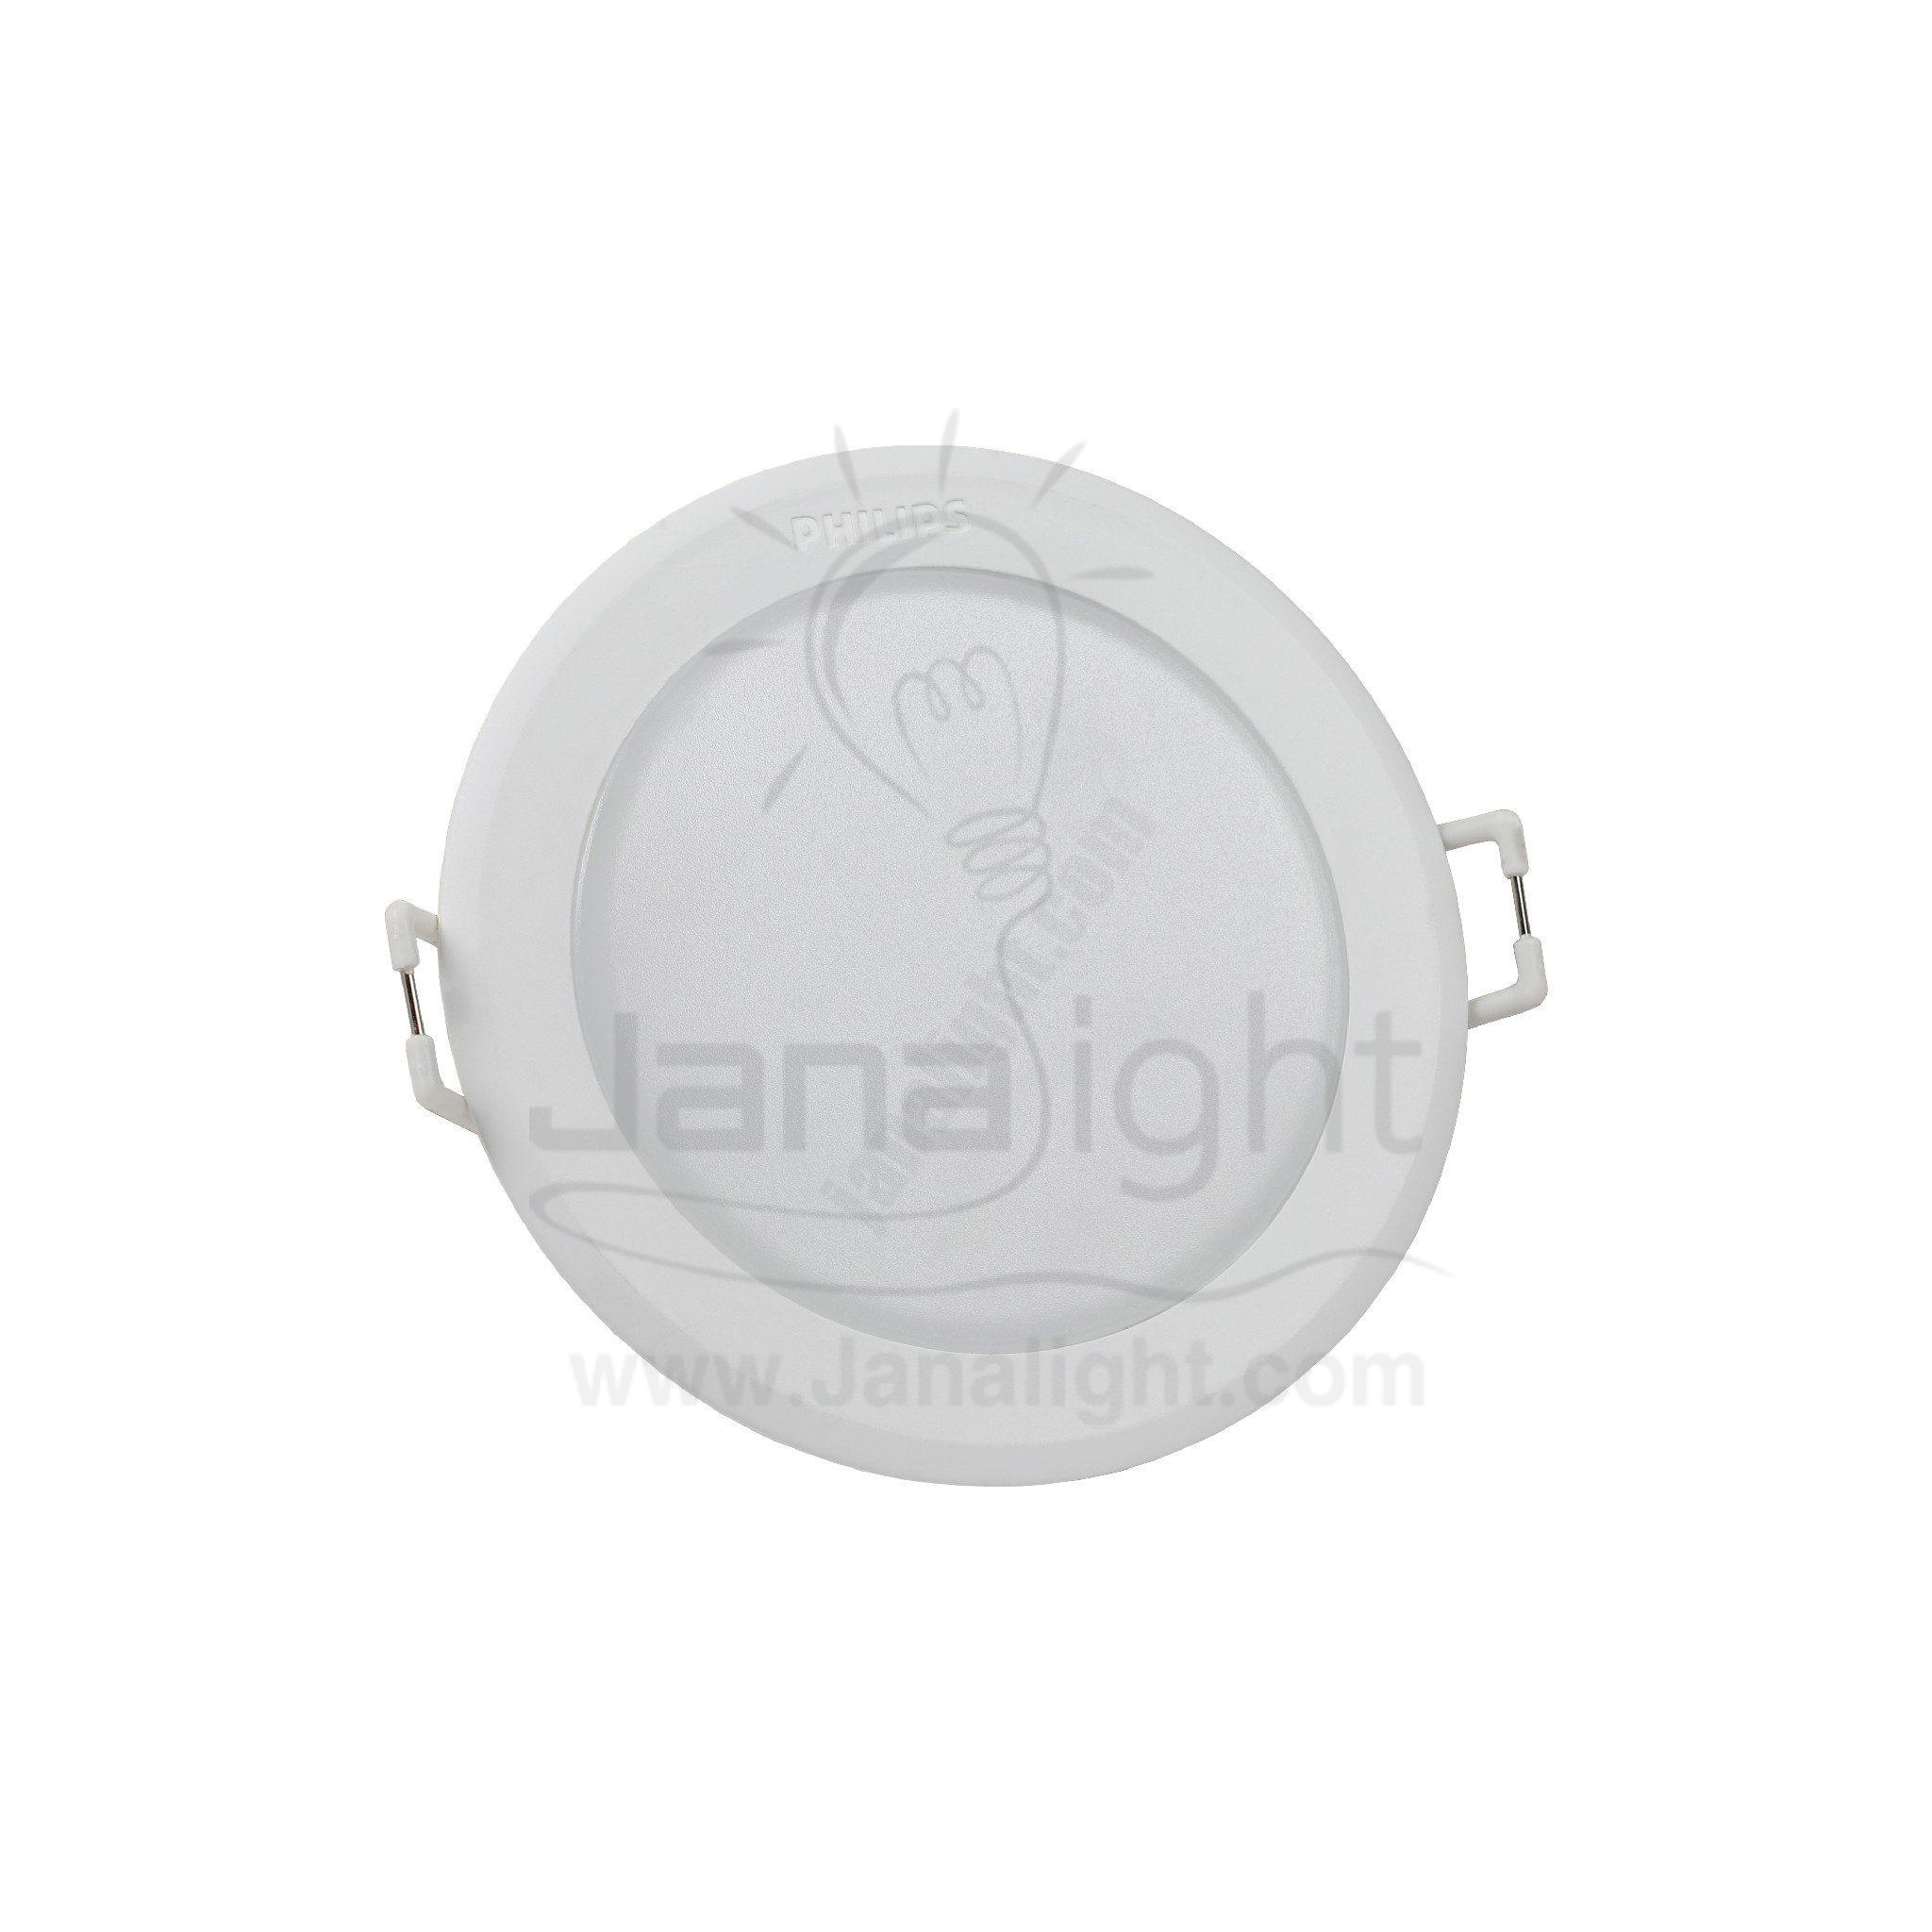 سبوت بانيل مدور ميسون 3.5 وات ابيض فيليبس Round white 3.5 watt meson LED downlight philips